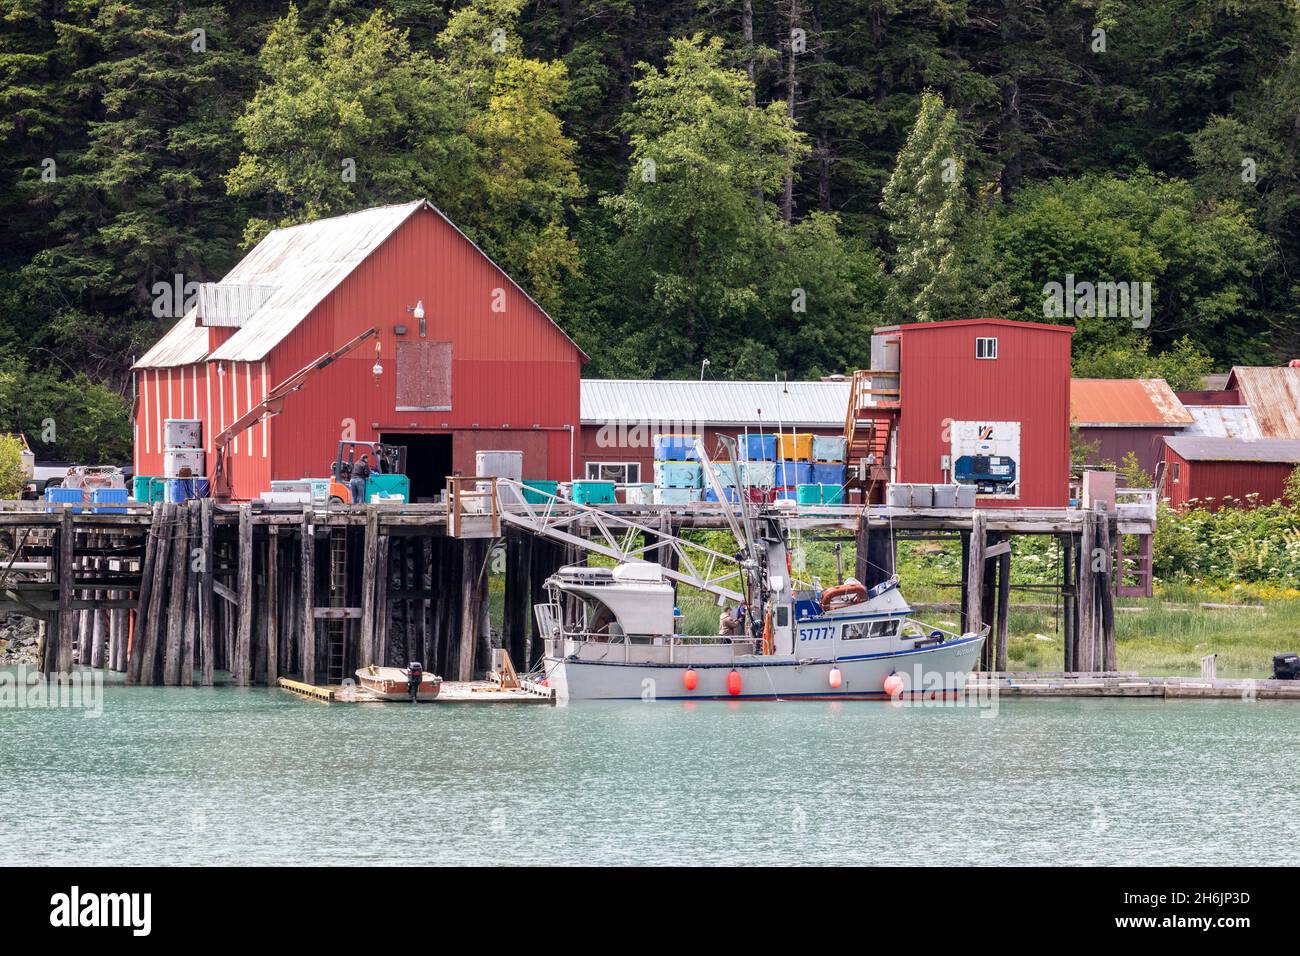 Usine de transformation du poisson près de la rivière Chilkat, Haines, sud-est de l'Alaska, États-Unis d'Amérique, Amérique du Nord Banque D'Images